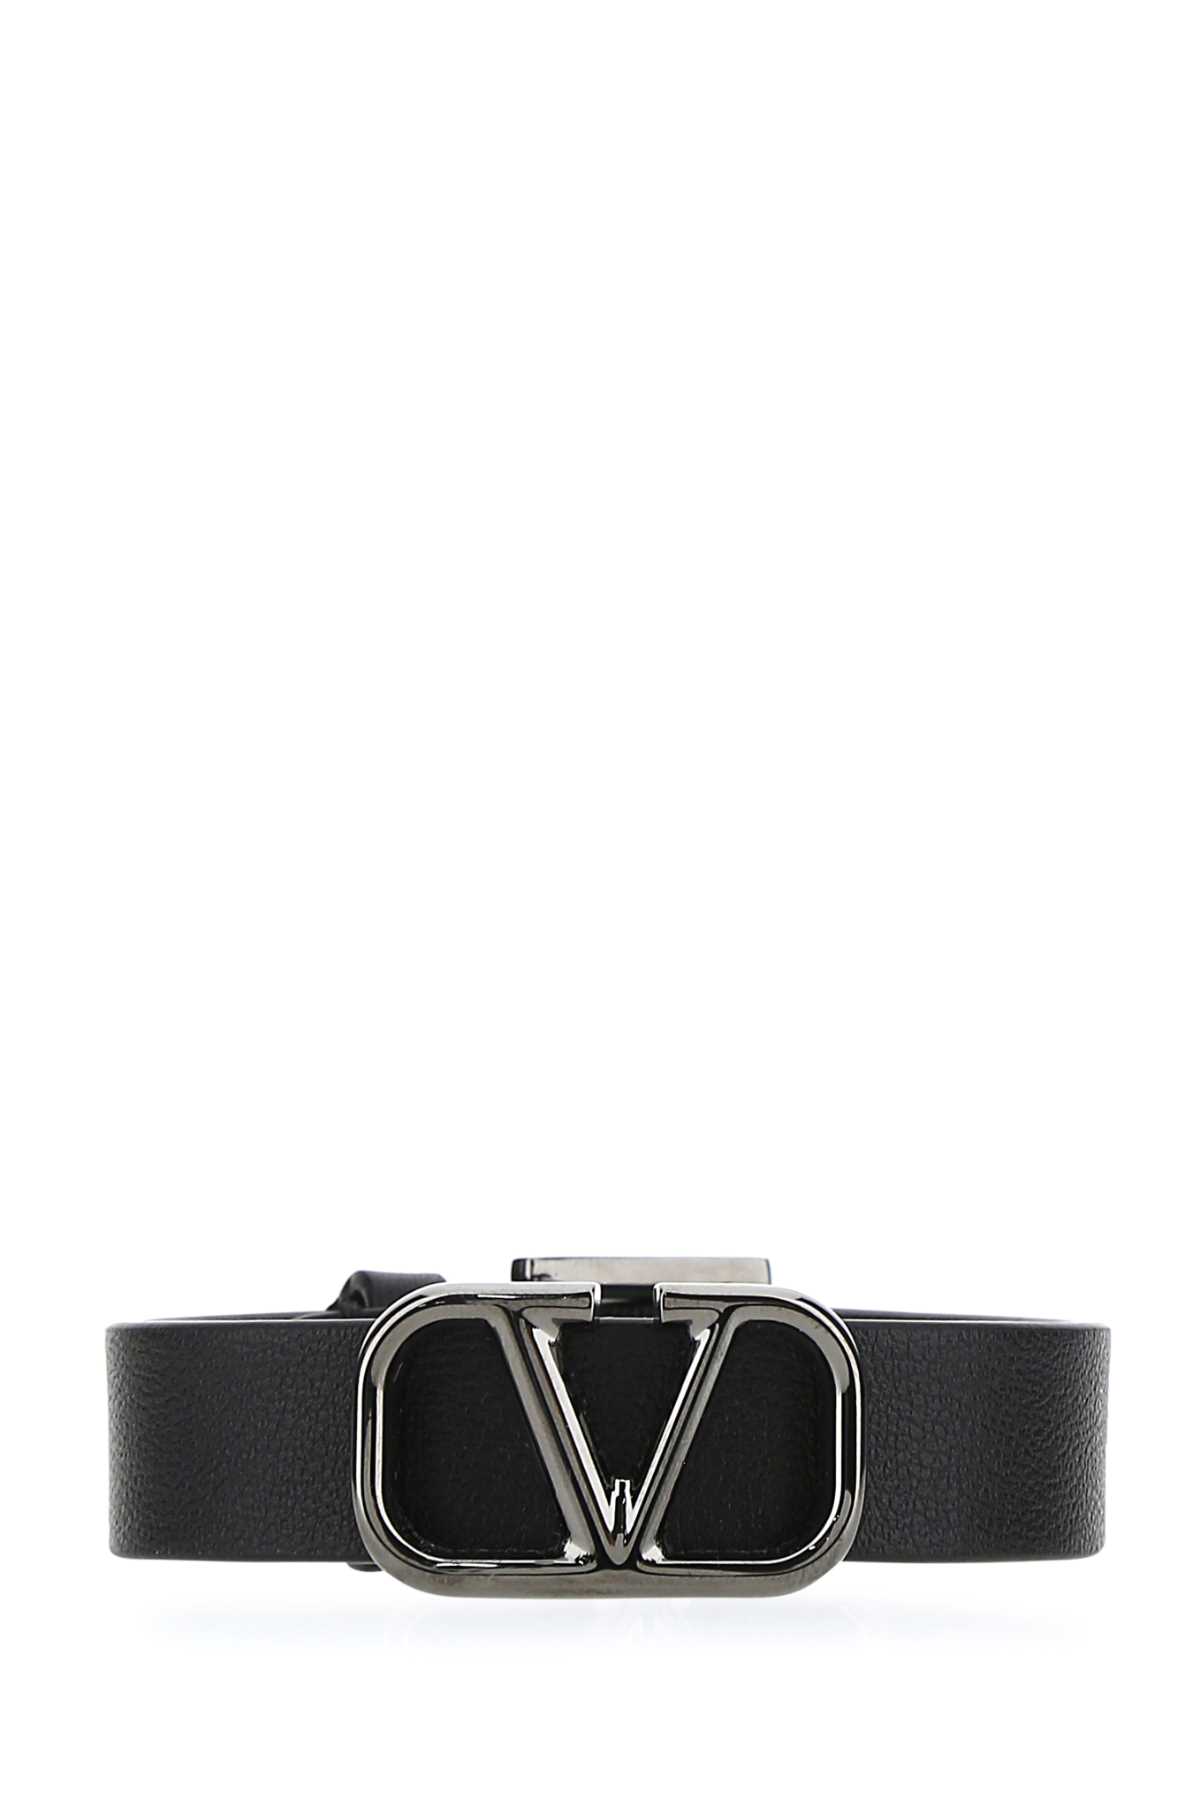 Valentino Garavani Black Leather Vlogo Bracelet In Nero